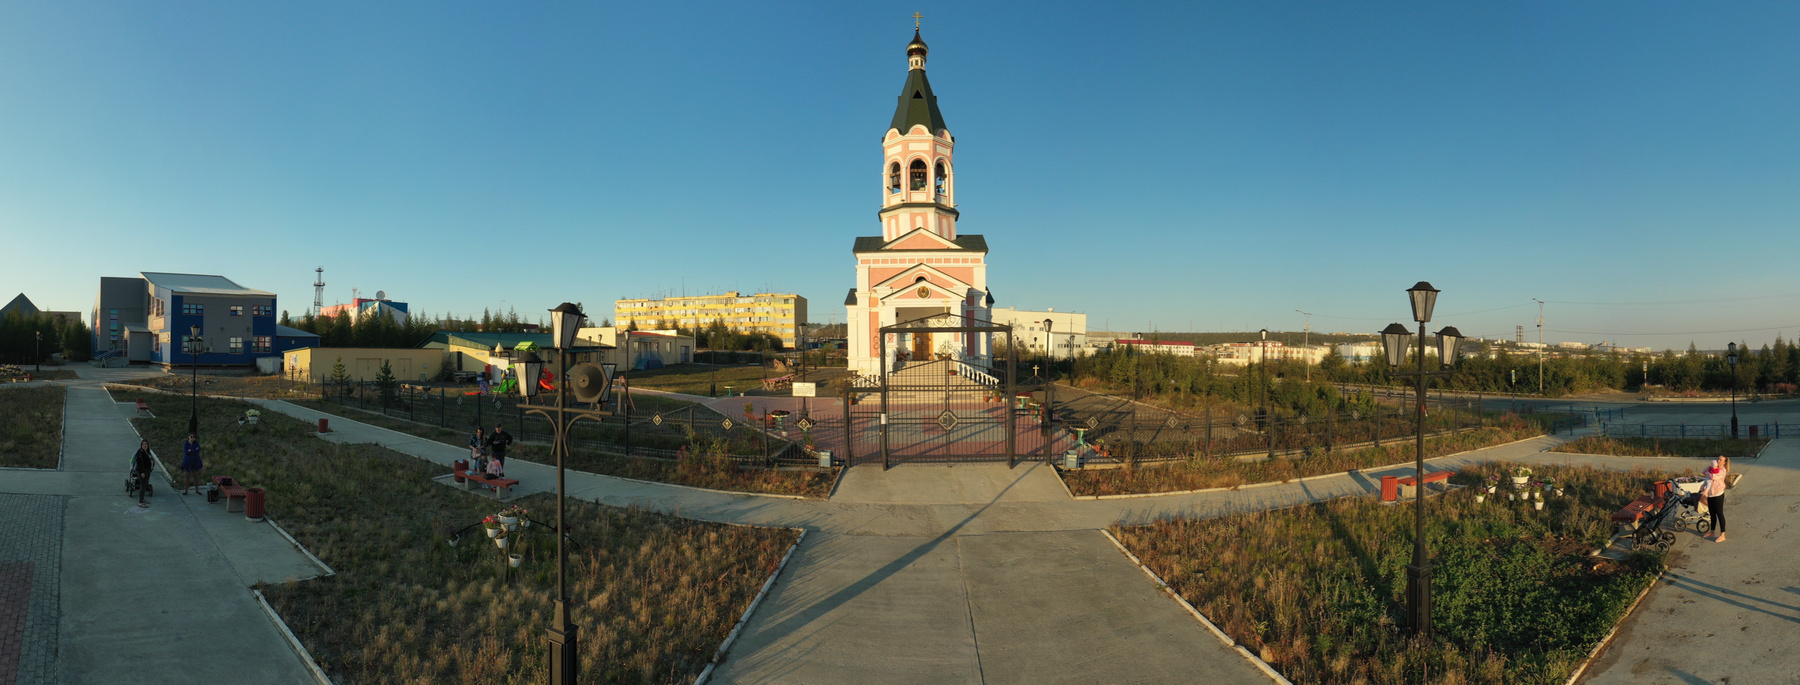 Якутская красота. Церковь, лето 2020 Якутия мирнинский район Айхал